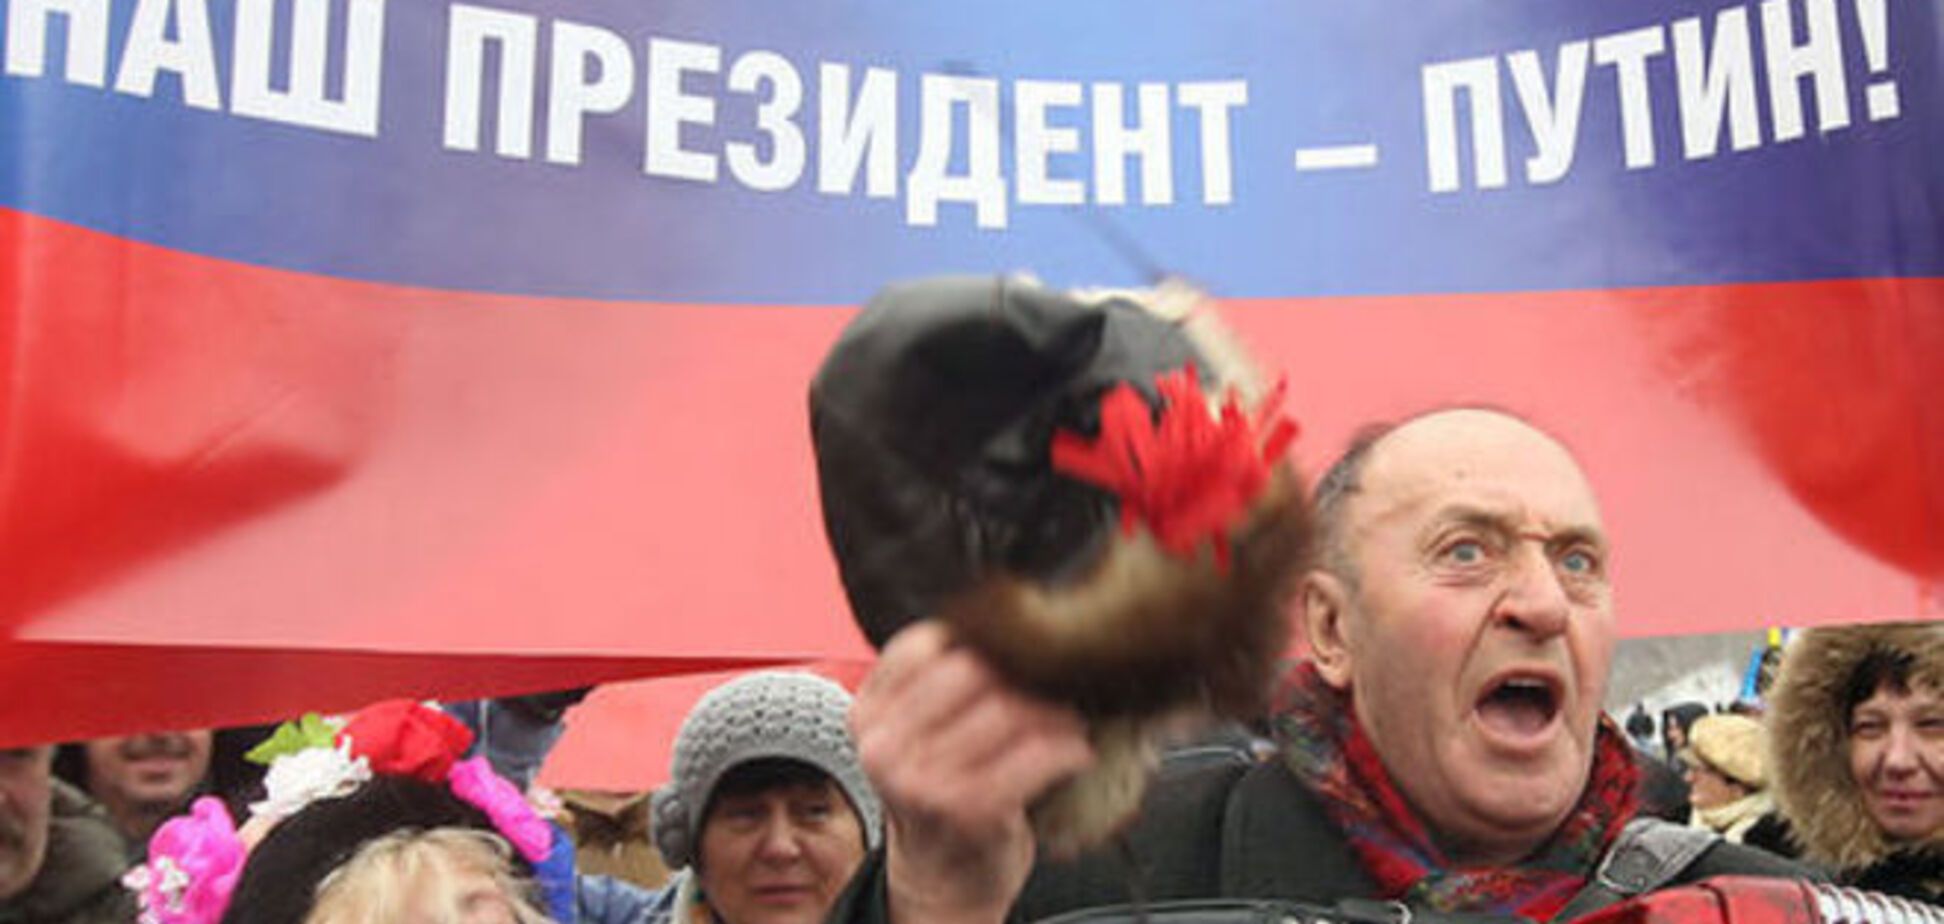 Через год от поддержки Путина в России не останется и следа - Немцов